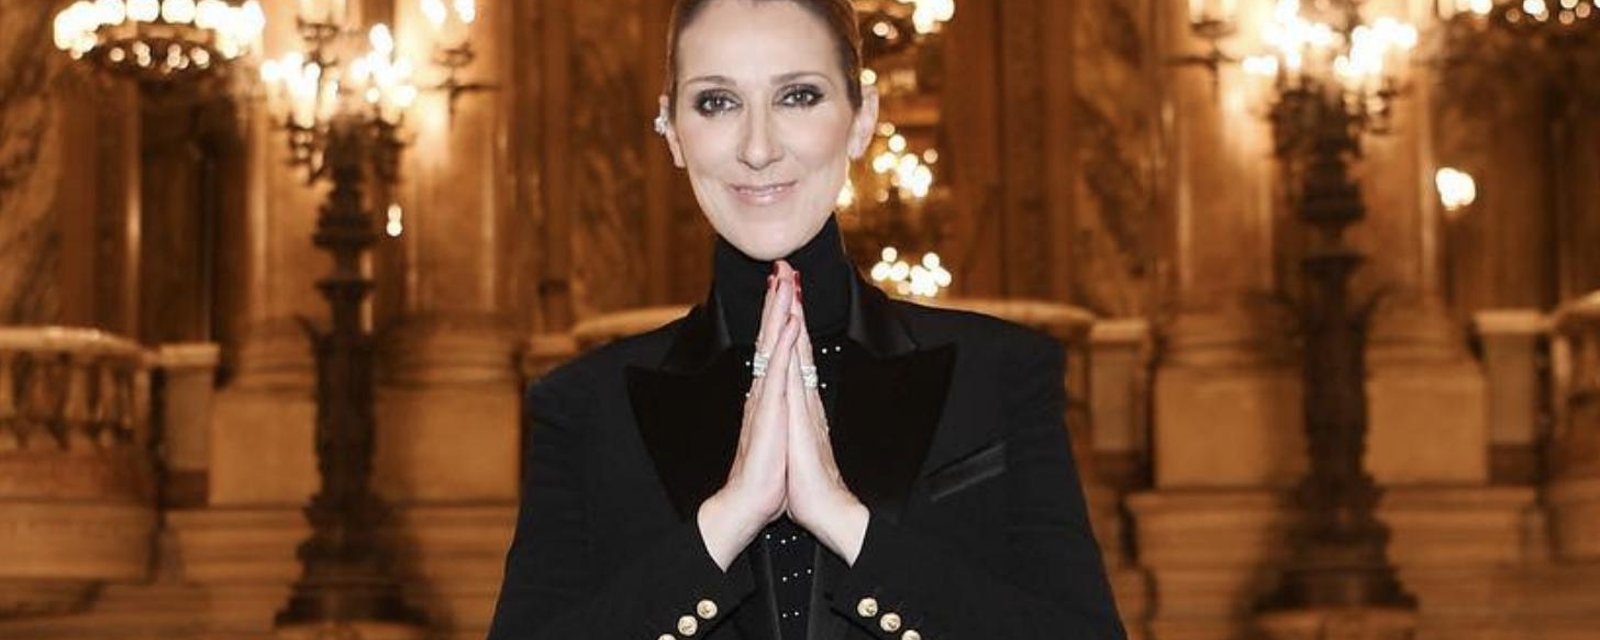 Une photo de Céline Dion dans une tenue très osée provoque plusieurs réactions